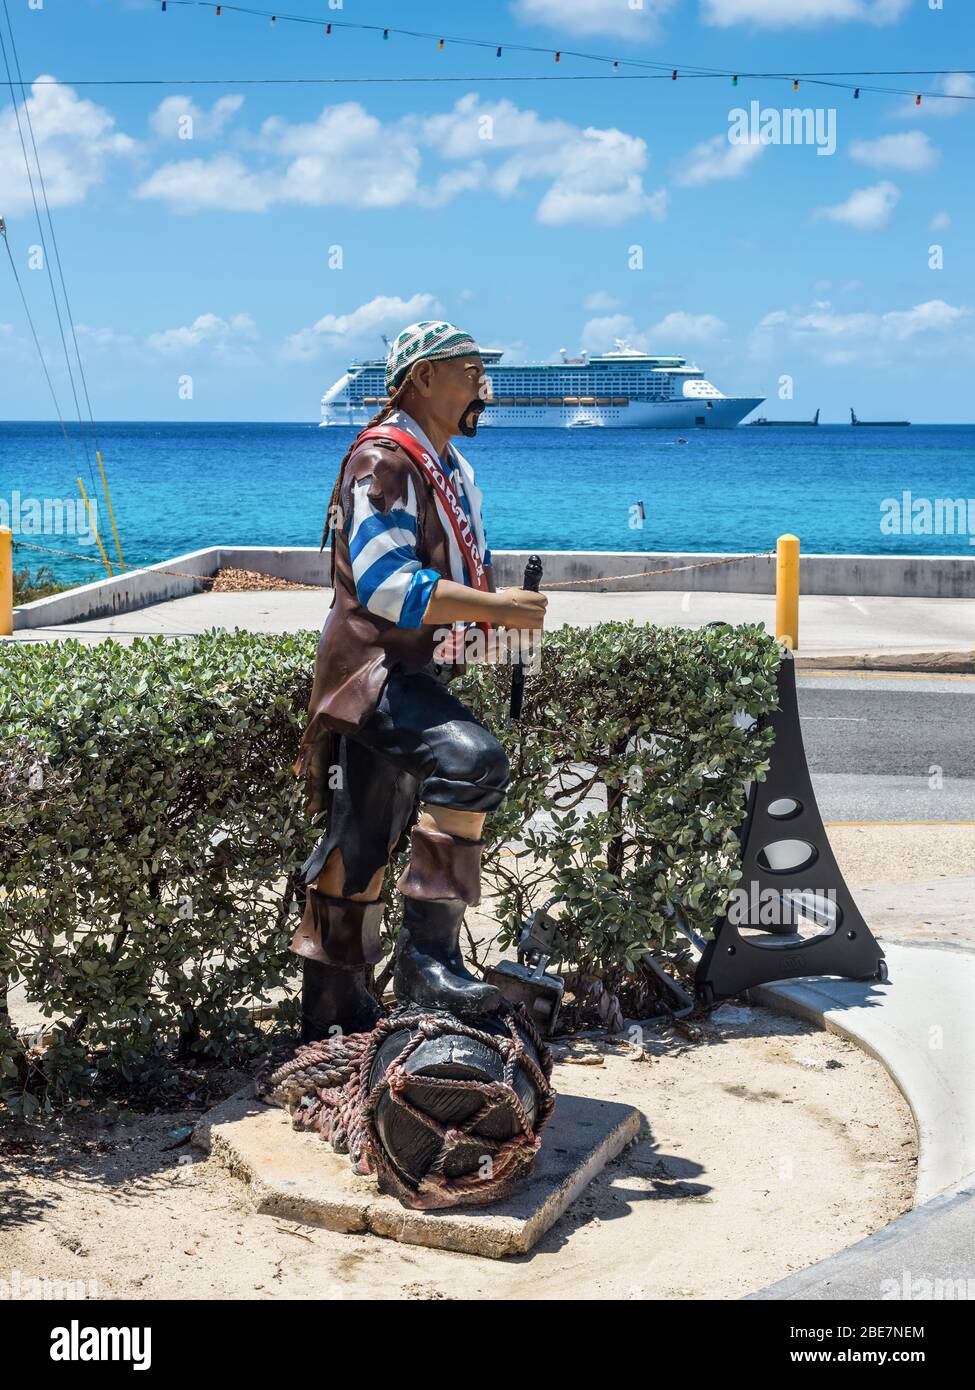 George Town, Grand Cayman Island, Royaume-Uni - 23 avril 2019 : vue sur la rue le jour avec la statue du pirate située en face du magasin de George Town, Grand Cayman Banque D'Images